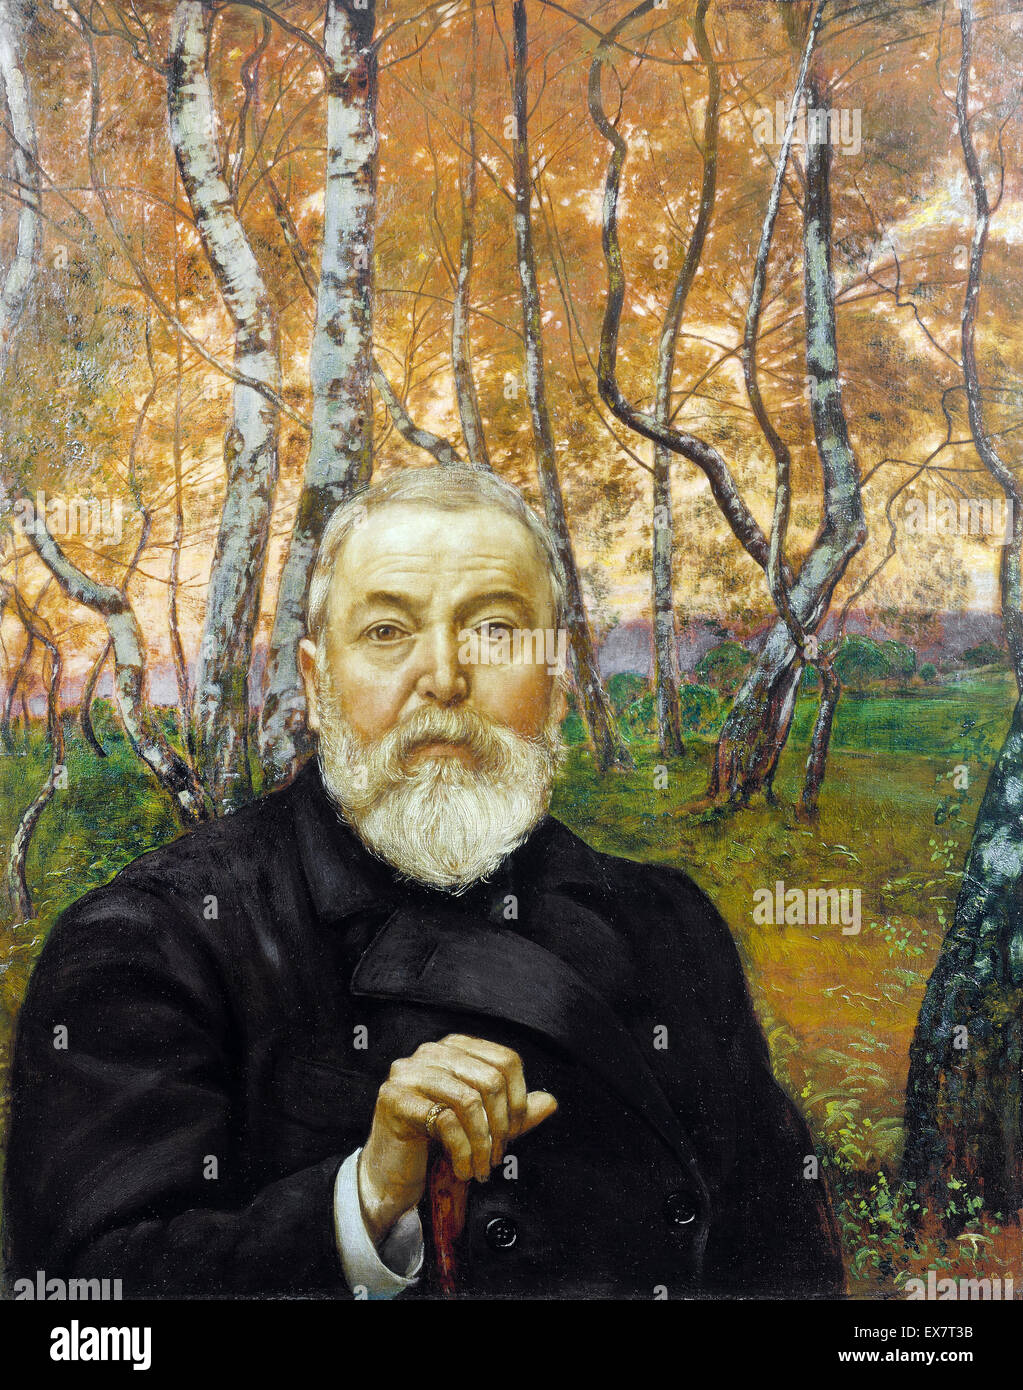 Hans Thoma, Self-portrait davanti a un bosco di betulle, 1899 olio su tela. Stadel, Frankfurt am Main, Germania. Foto Stock